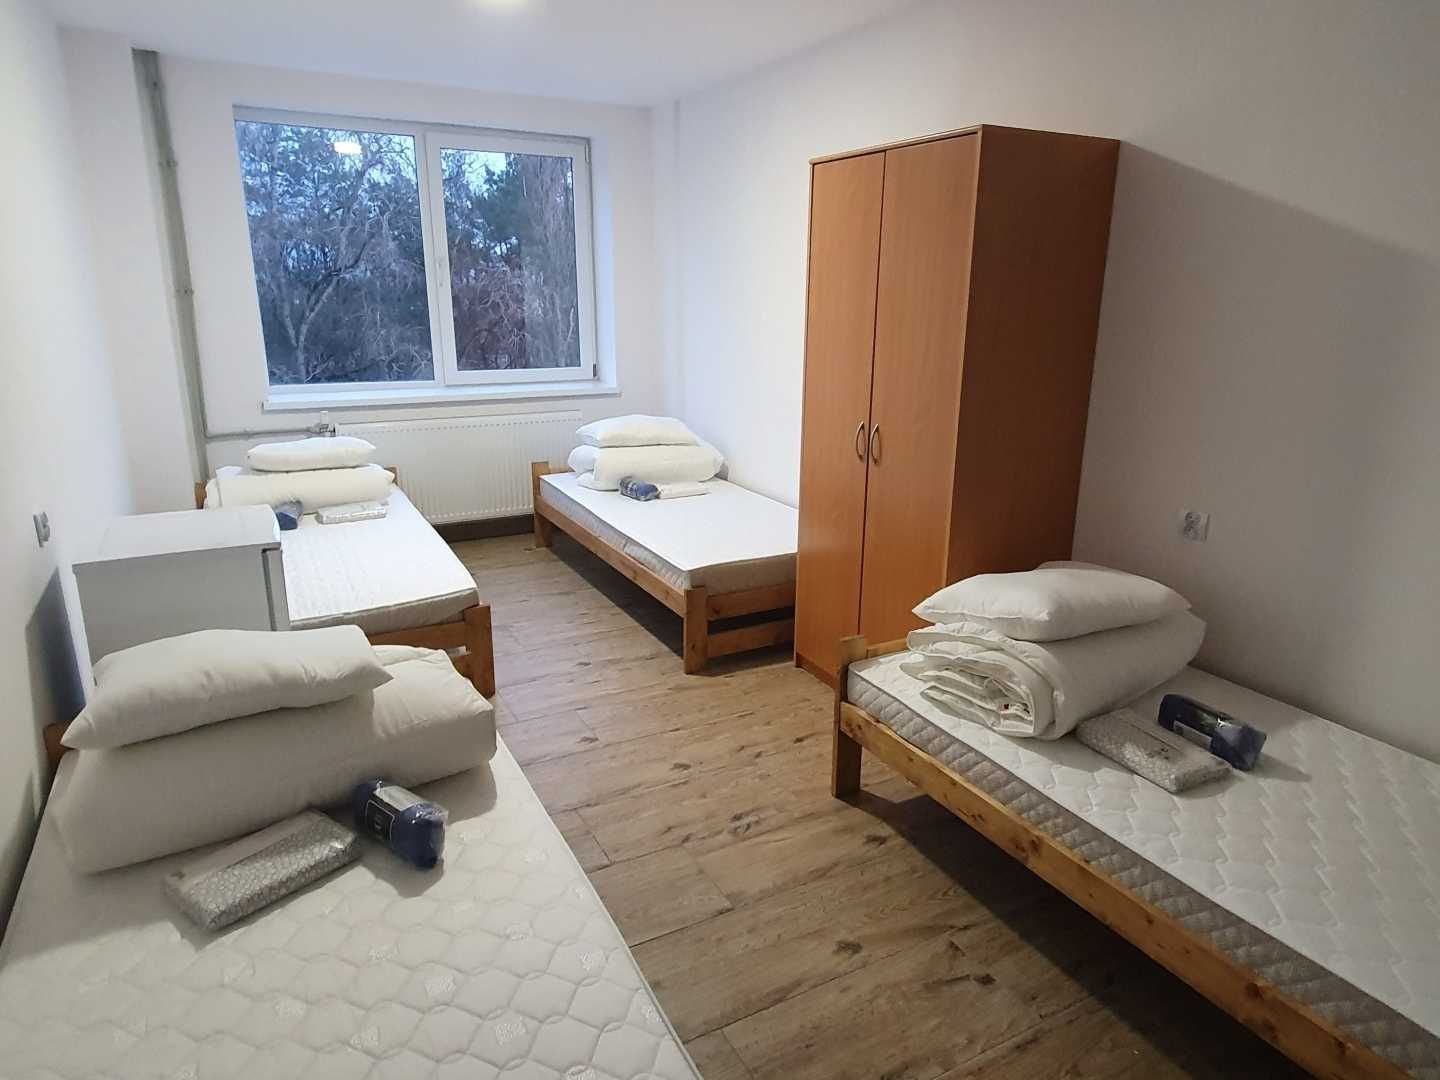 Pokoje dla pracowników, noclegi Warszawa, kwatery, hotel, hostel